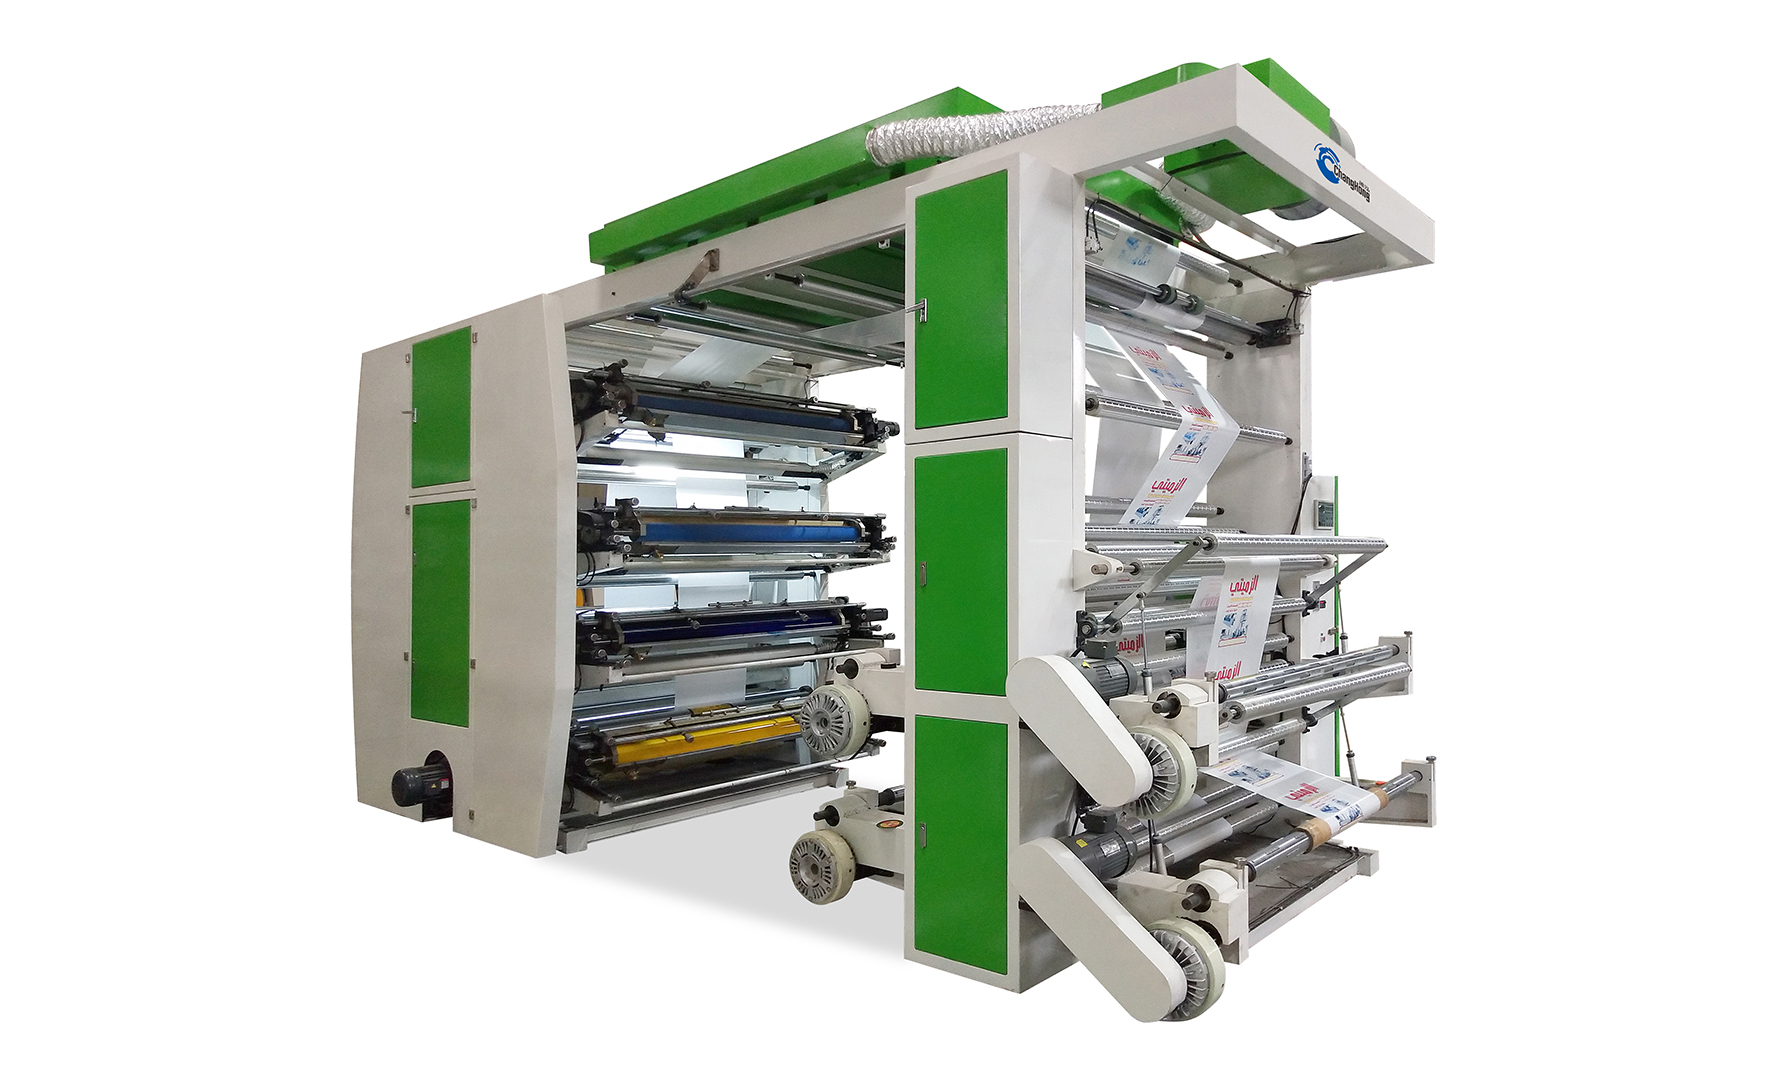 Gyors szállítás Kína 2 4 6 Színes köteg típus Papírpohár műanyag fólia nylon táska Flexo nyomtató nyomtató gép ár